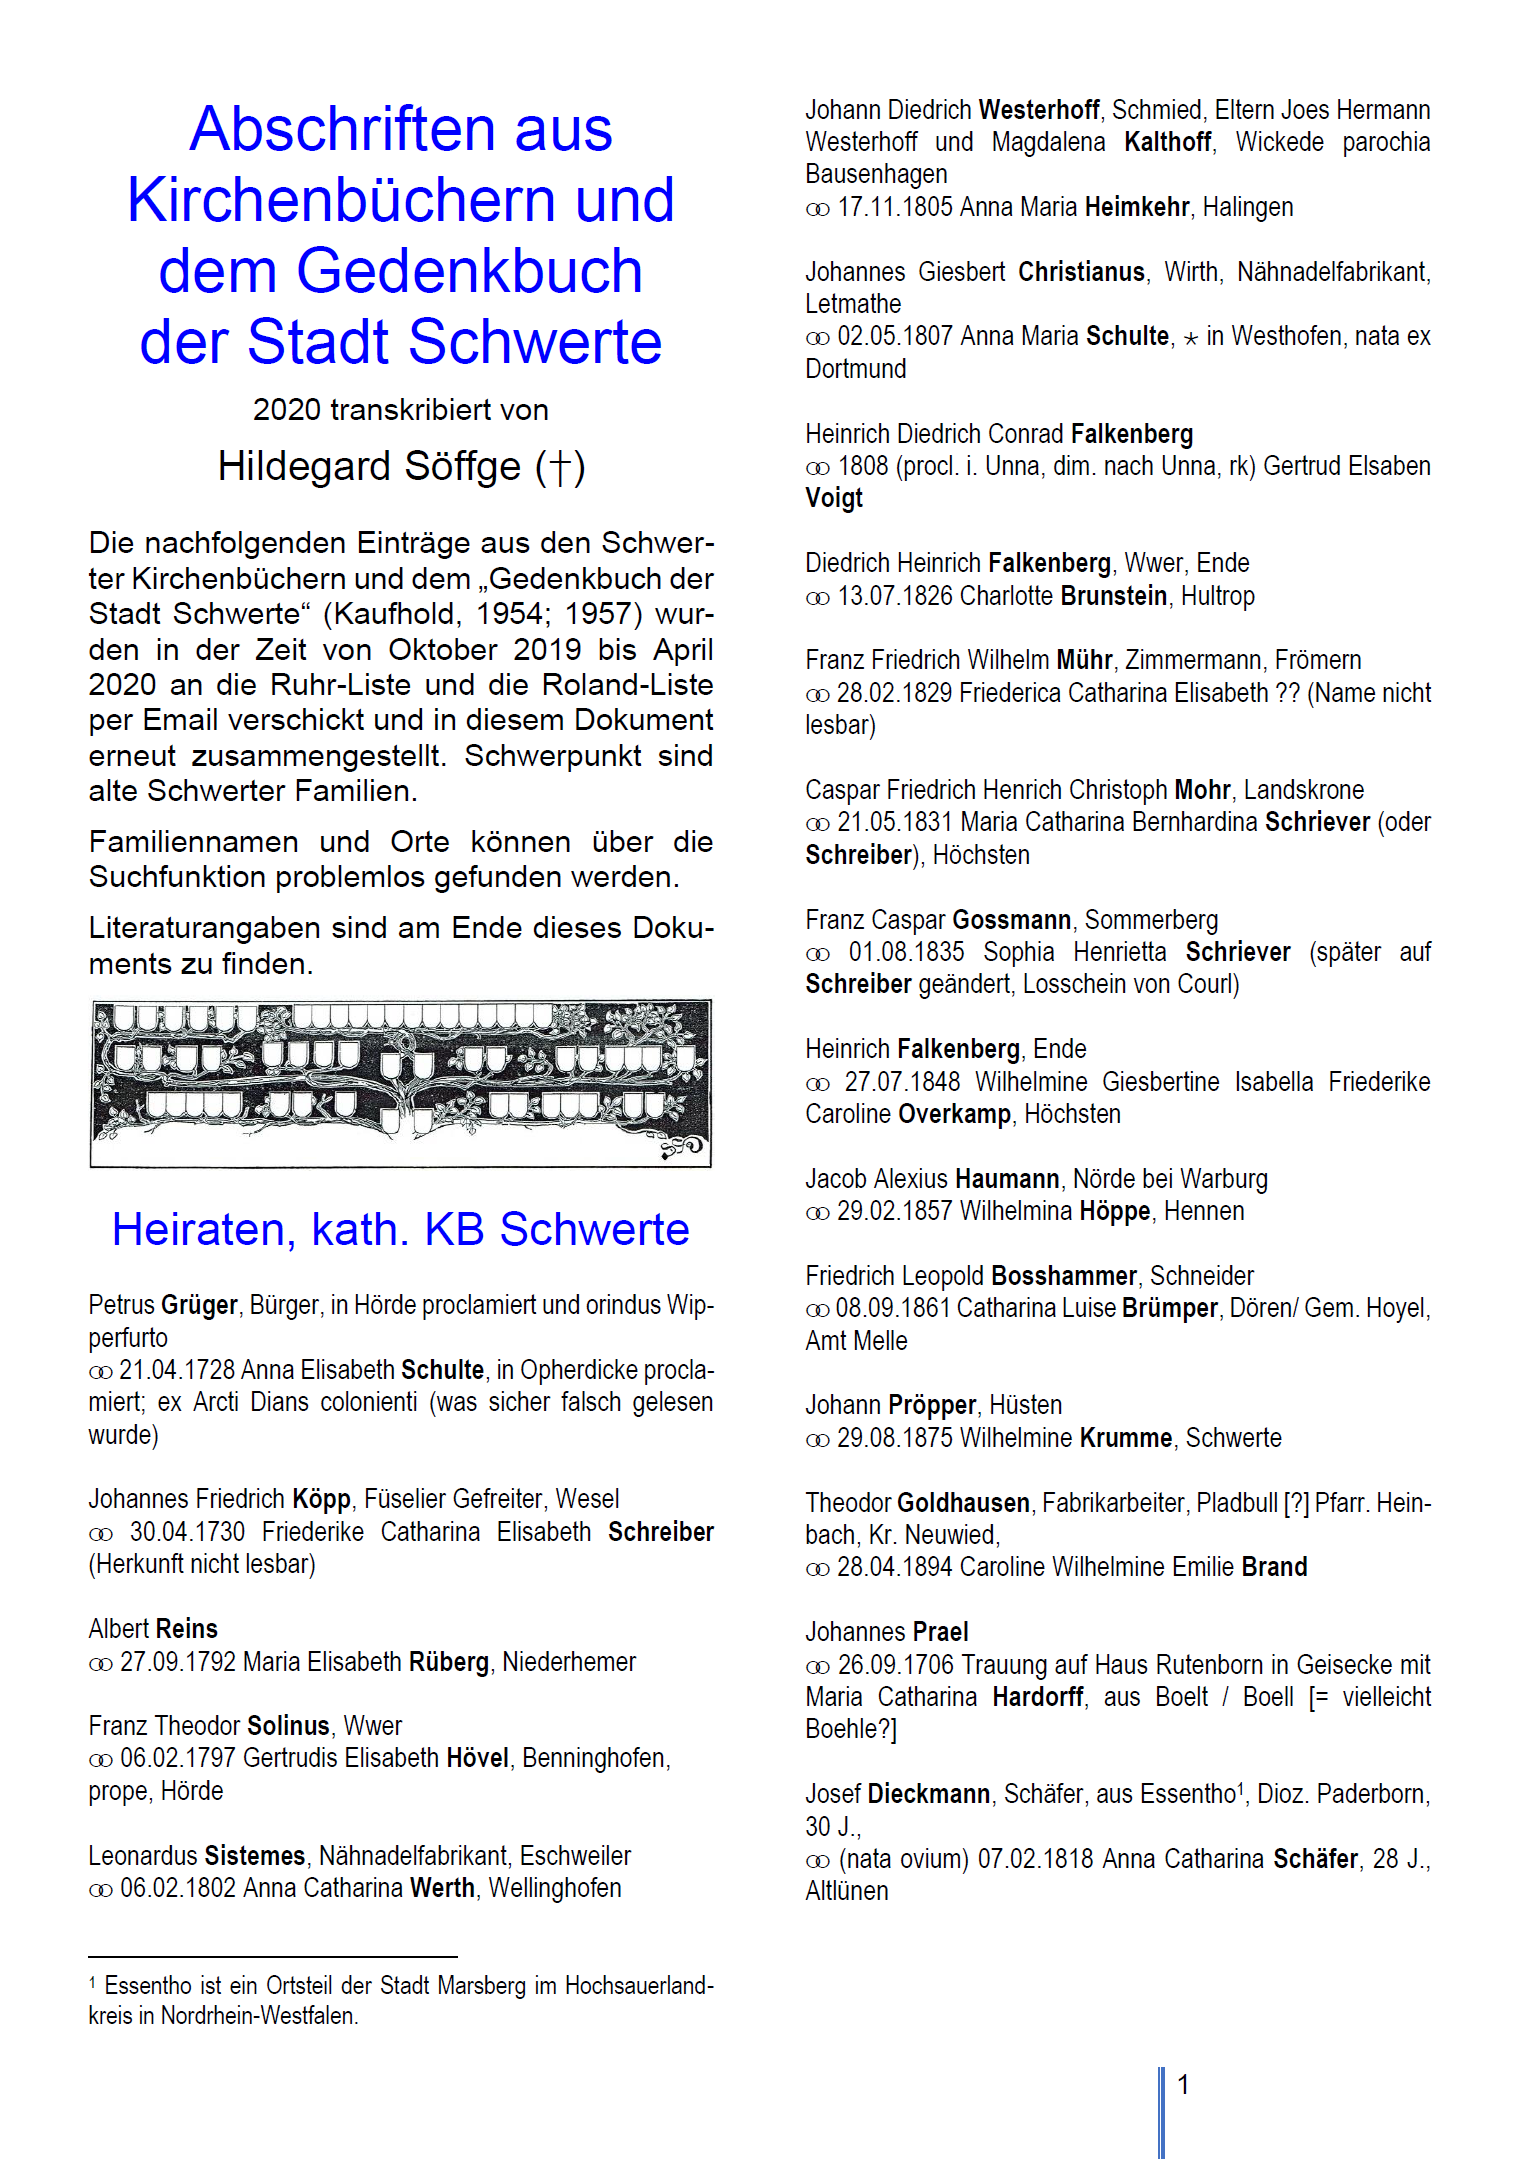 Söffge (2020), Abschriften aus Kirchenbüchern und dem Gedenkbuch der Stadt Schwerte